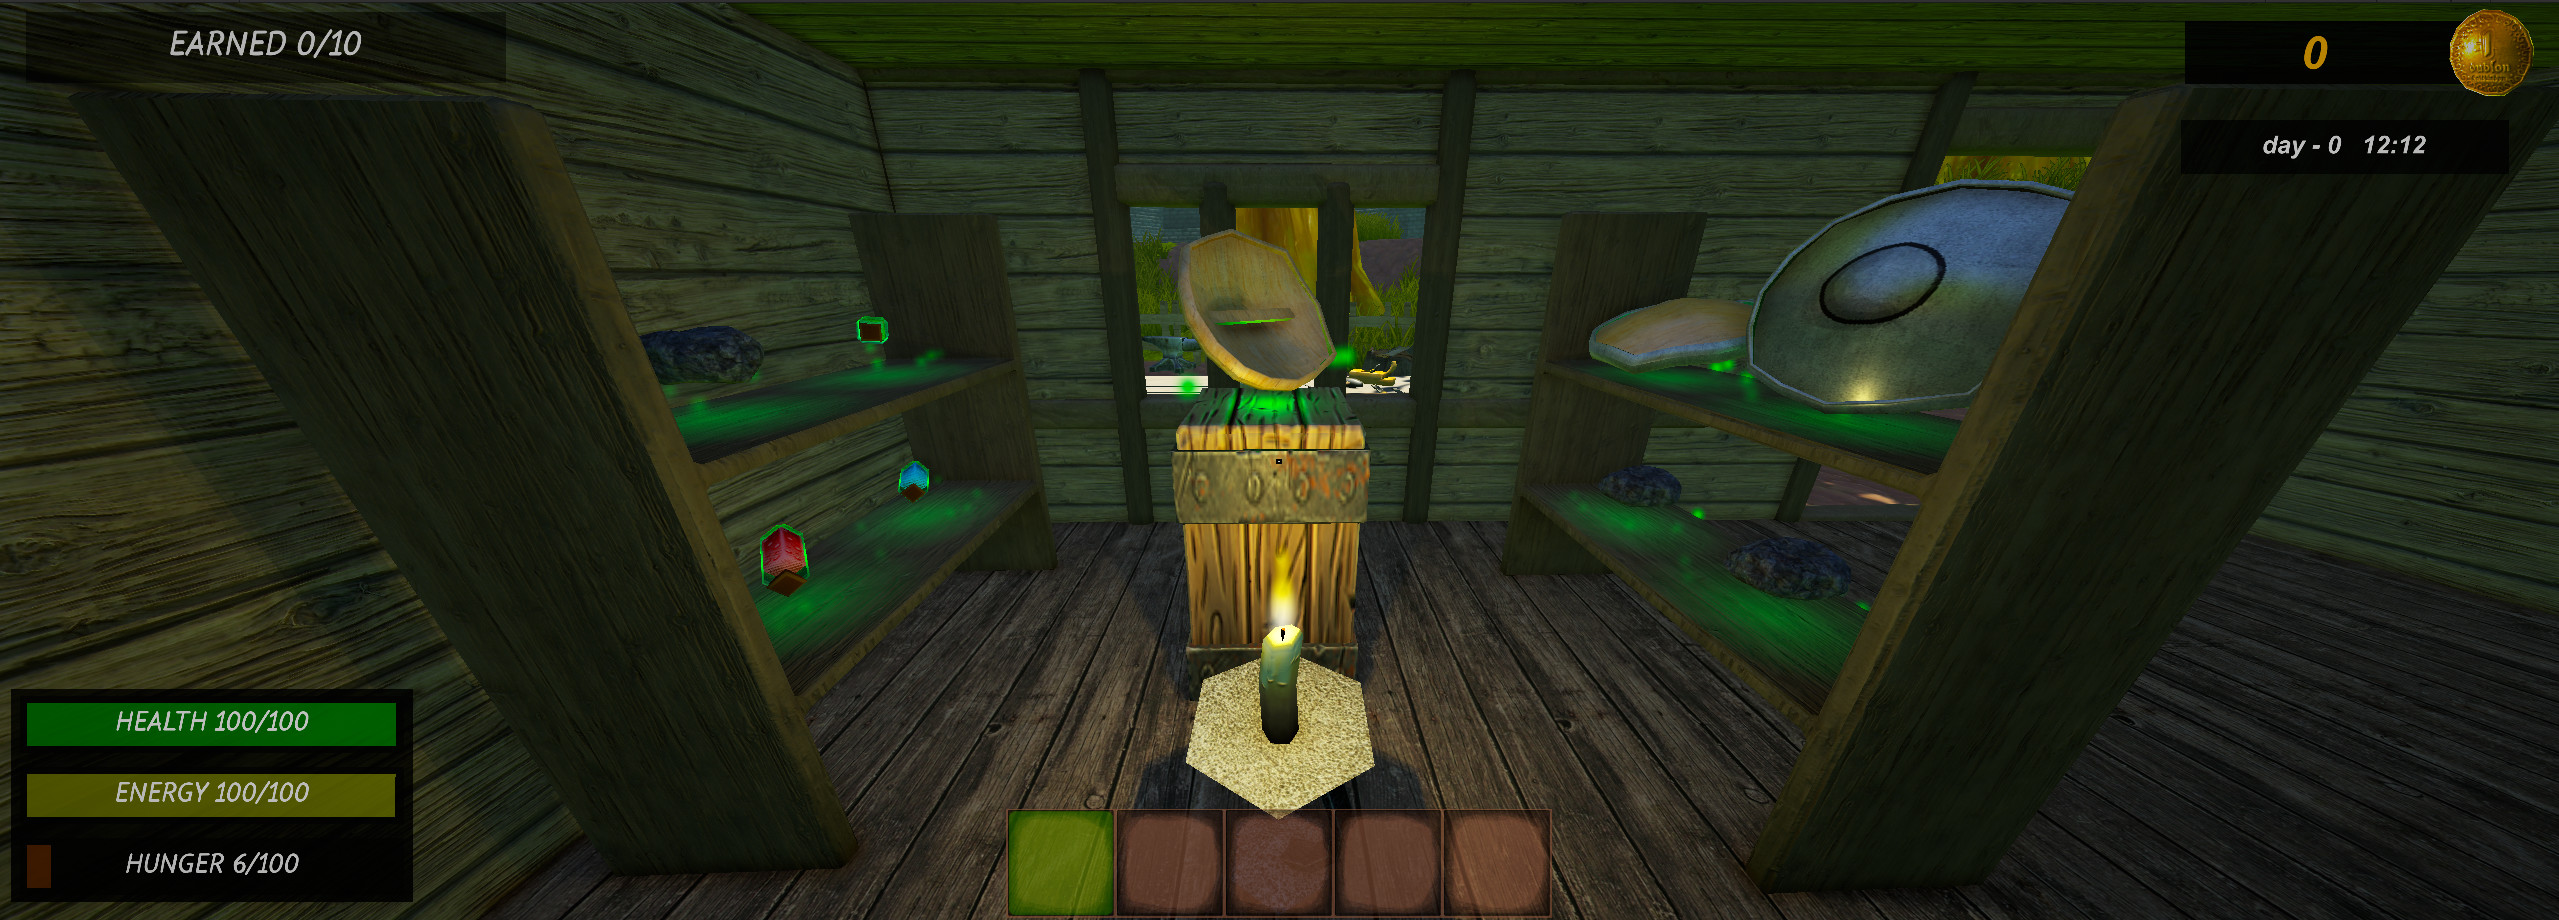 Medieval Shop Simulator screenshot